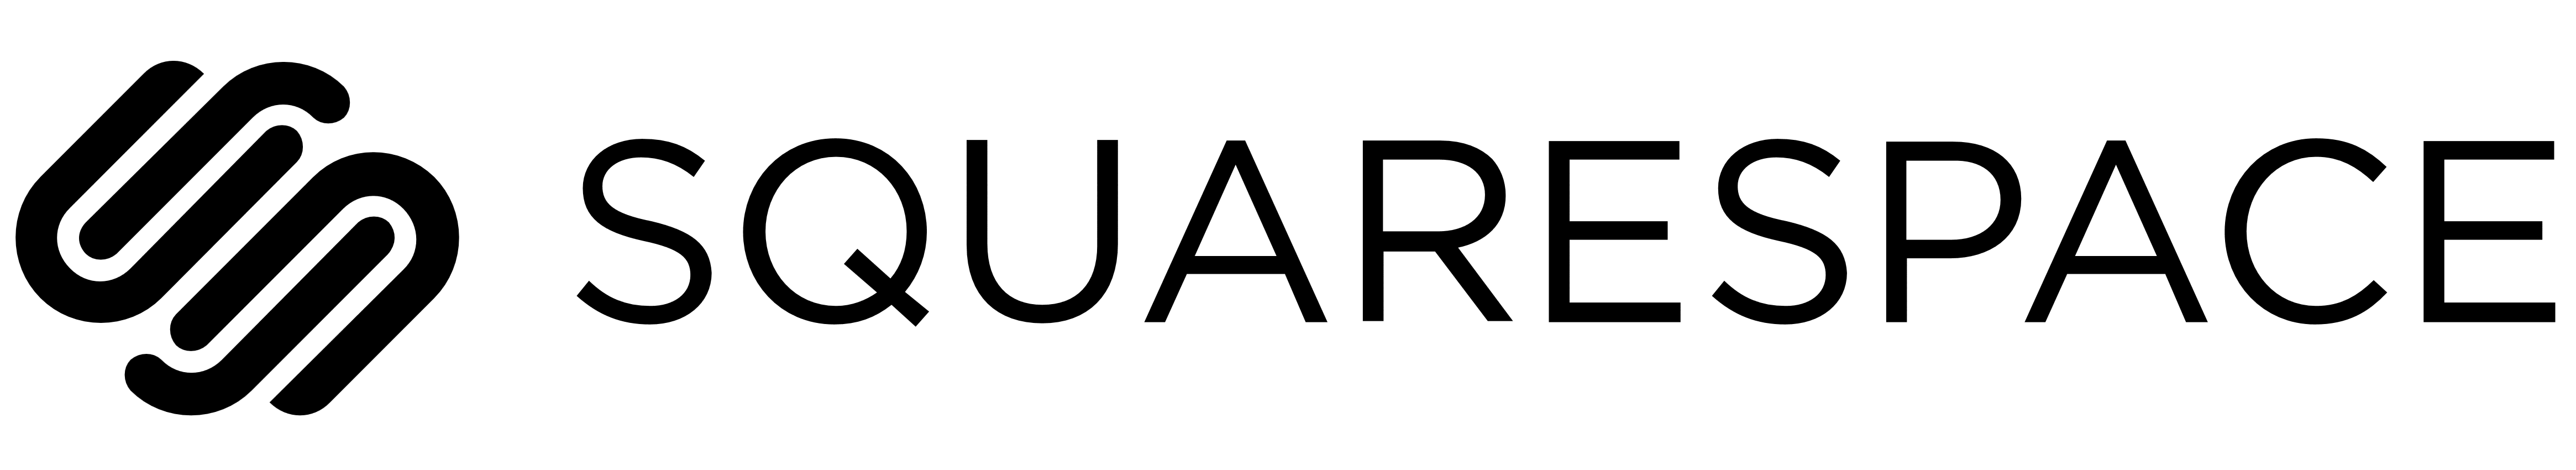 Squarespace logo, logotype